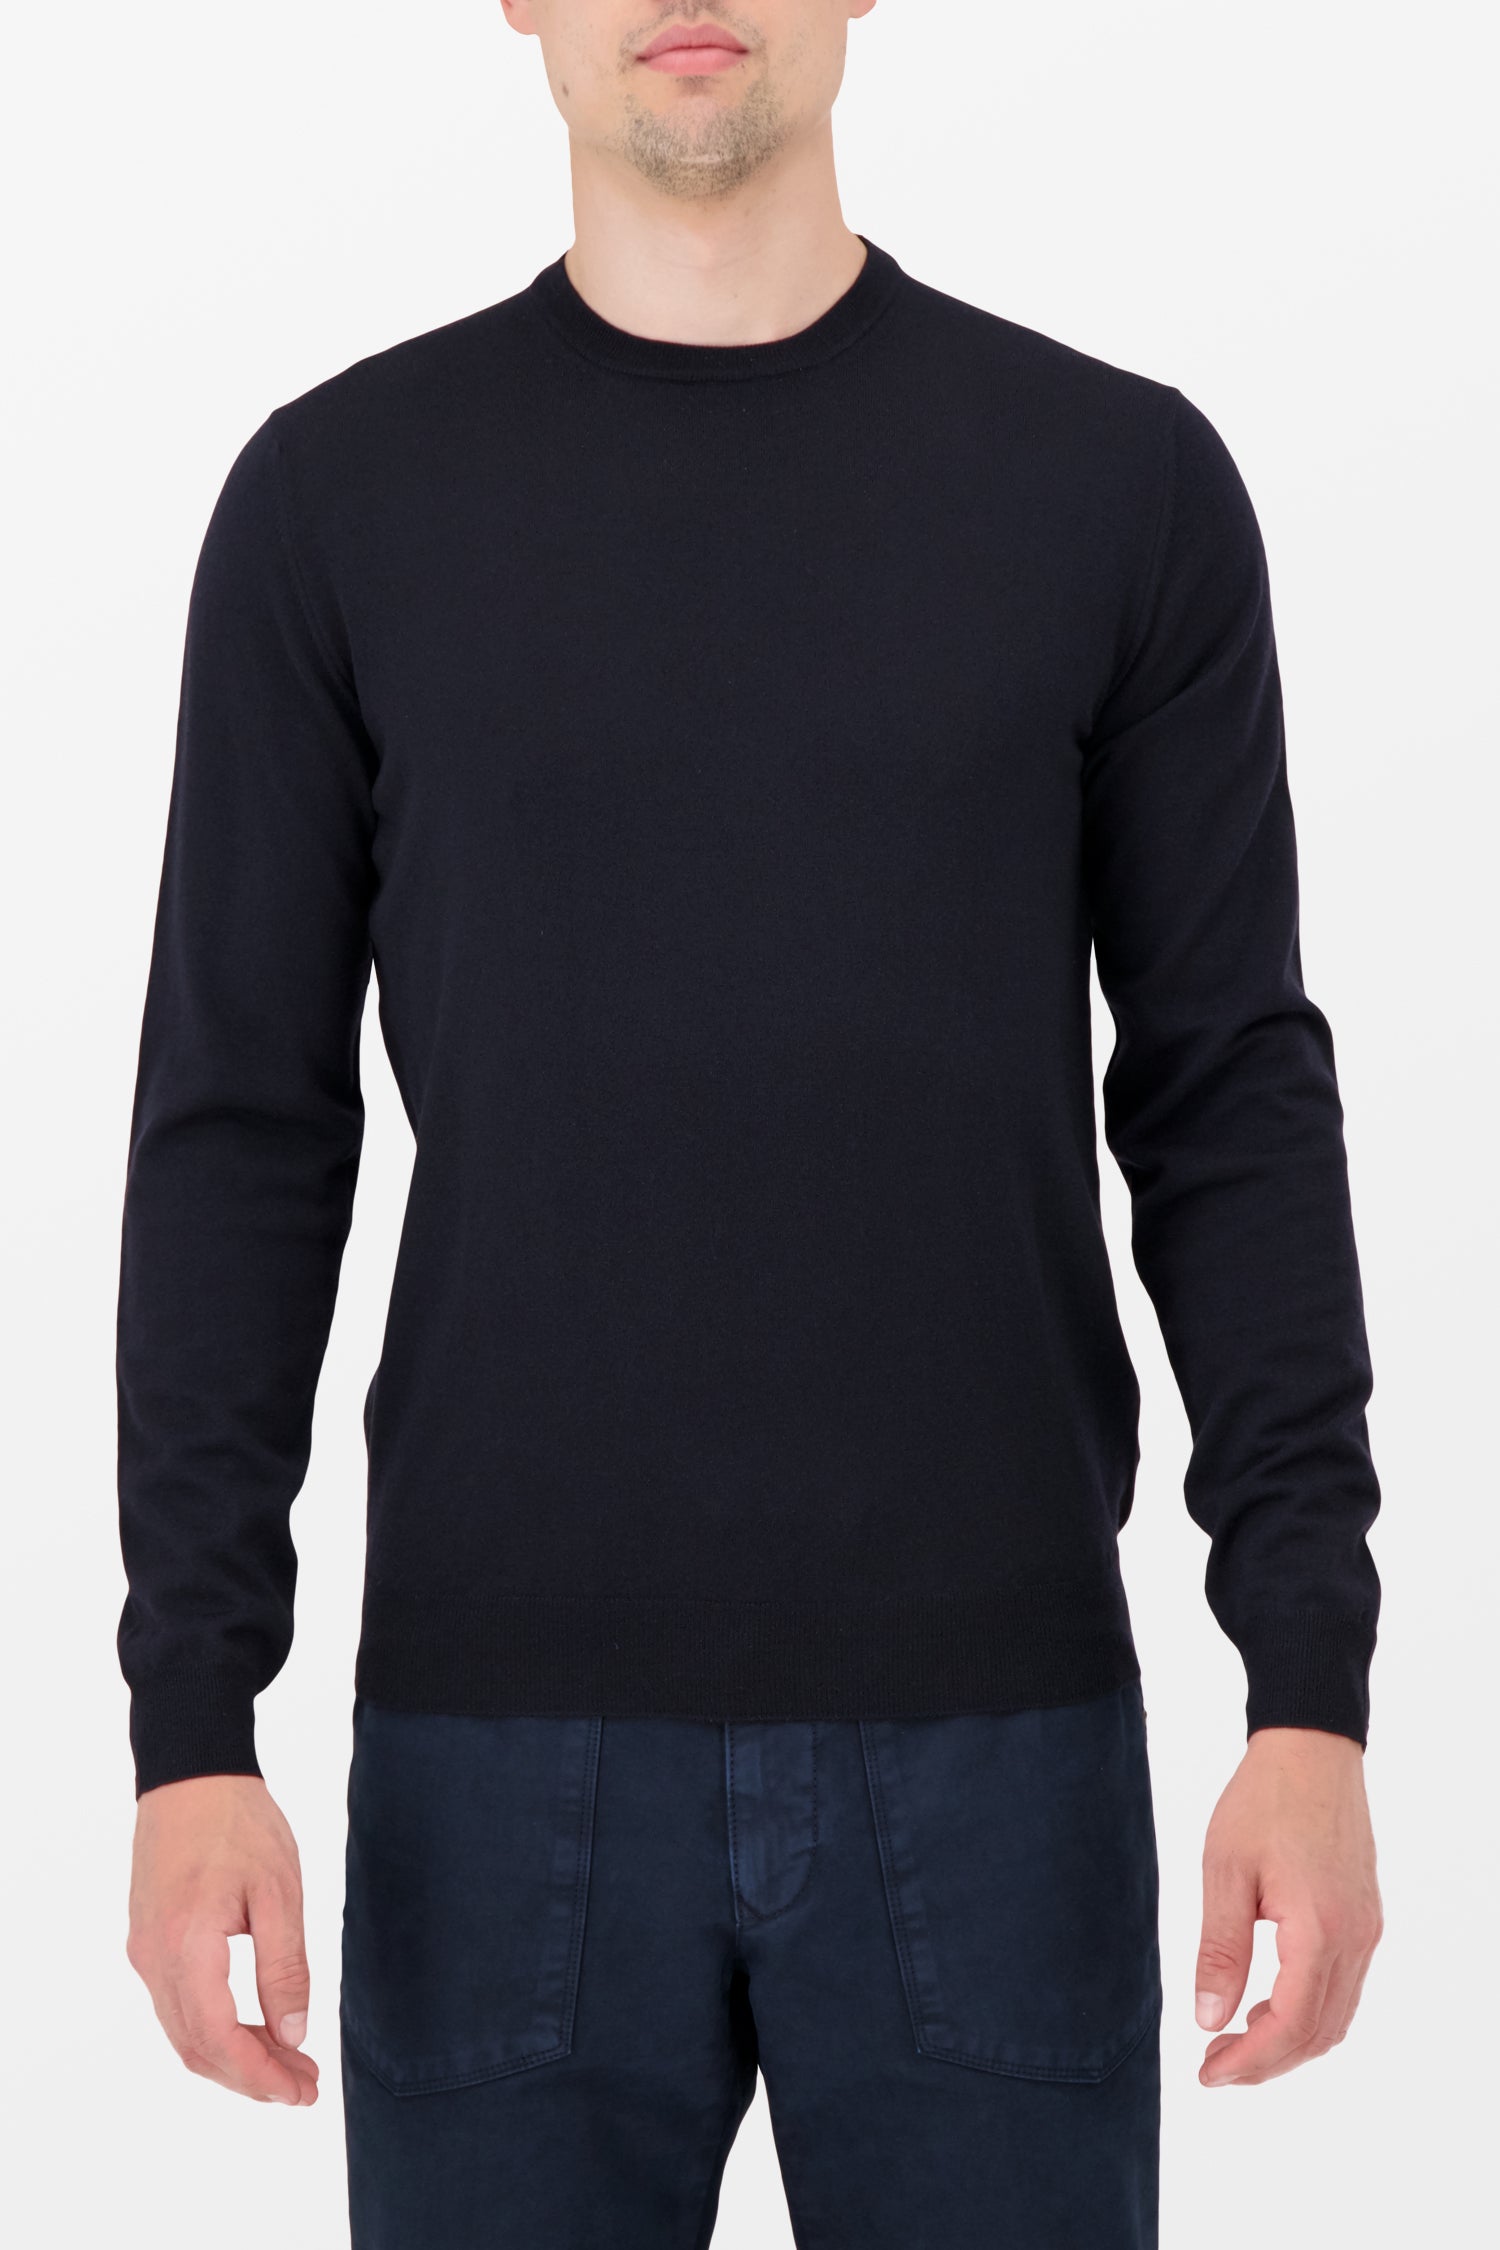 Zanone Navy Sweater